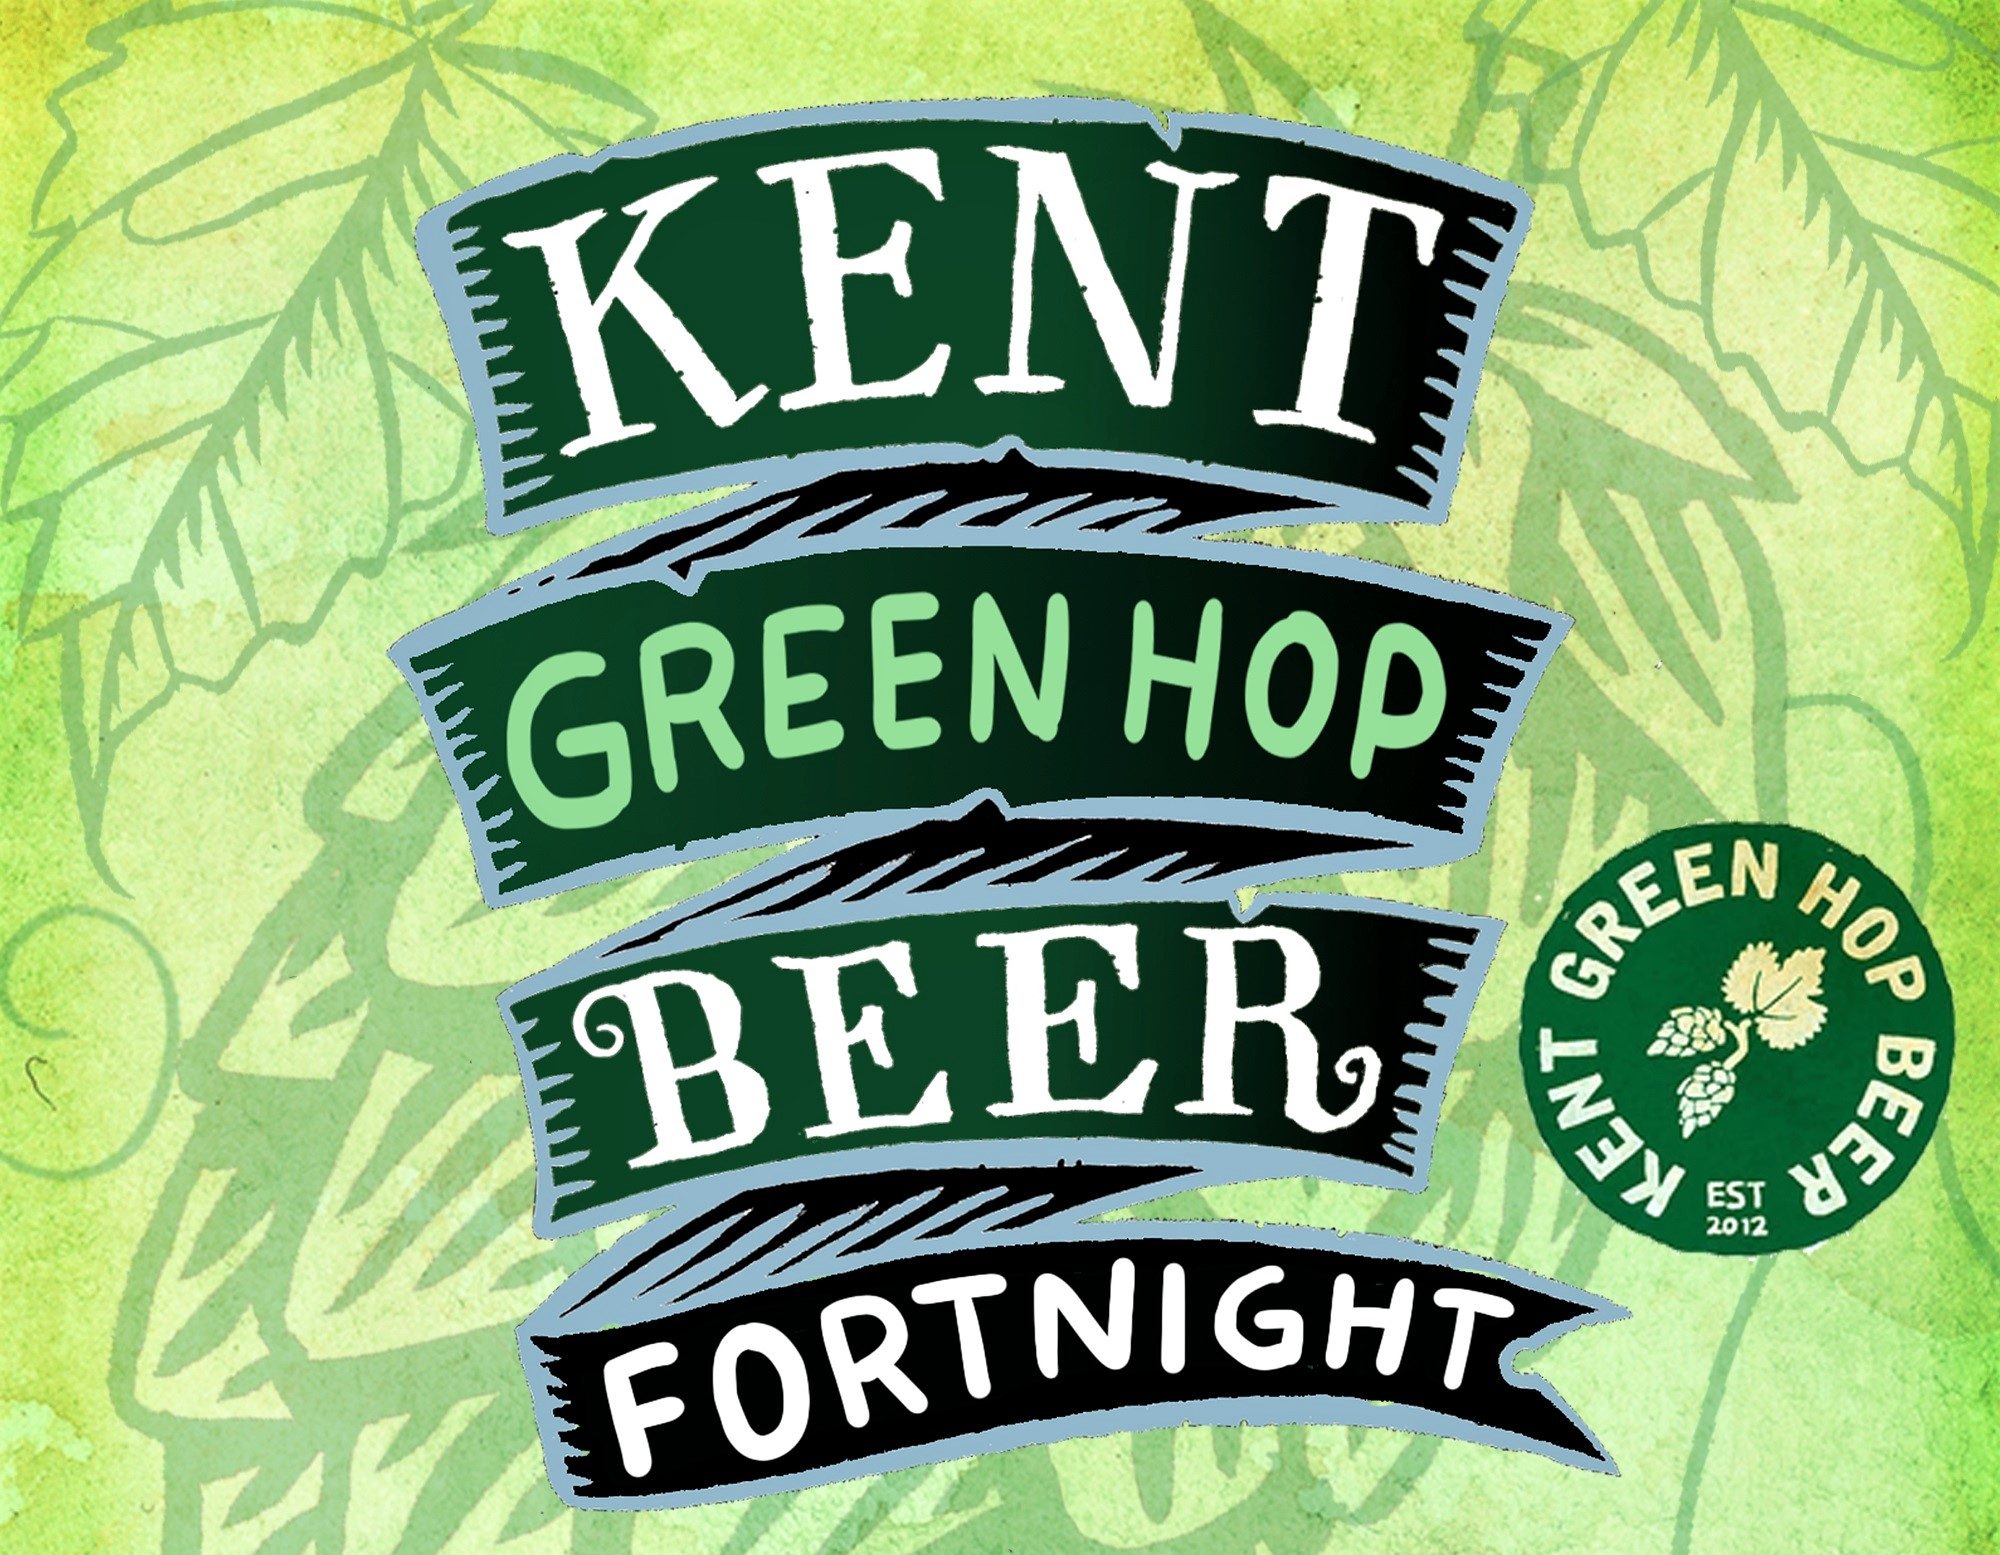 Kent Green Hop Beer Fortnight